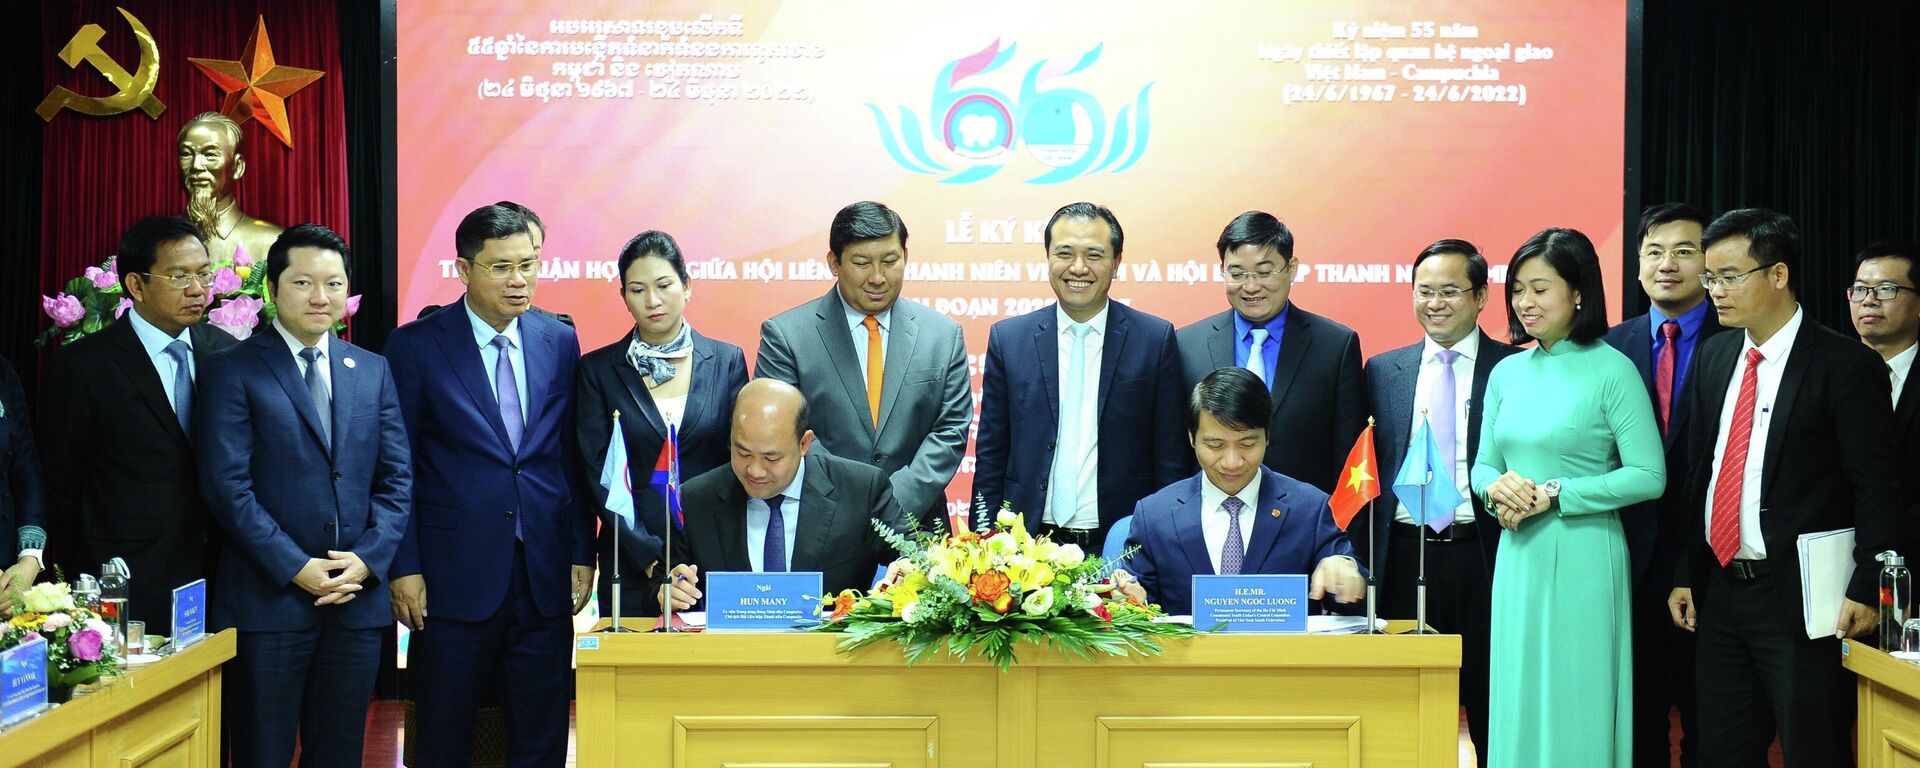 Tăng cường hợp tác giữa thanh niên Việt Nam và Campuchia giai đoạn 2022-2027 - Sputnik Việt Nam, 1920, 24.10.2022